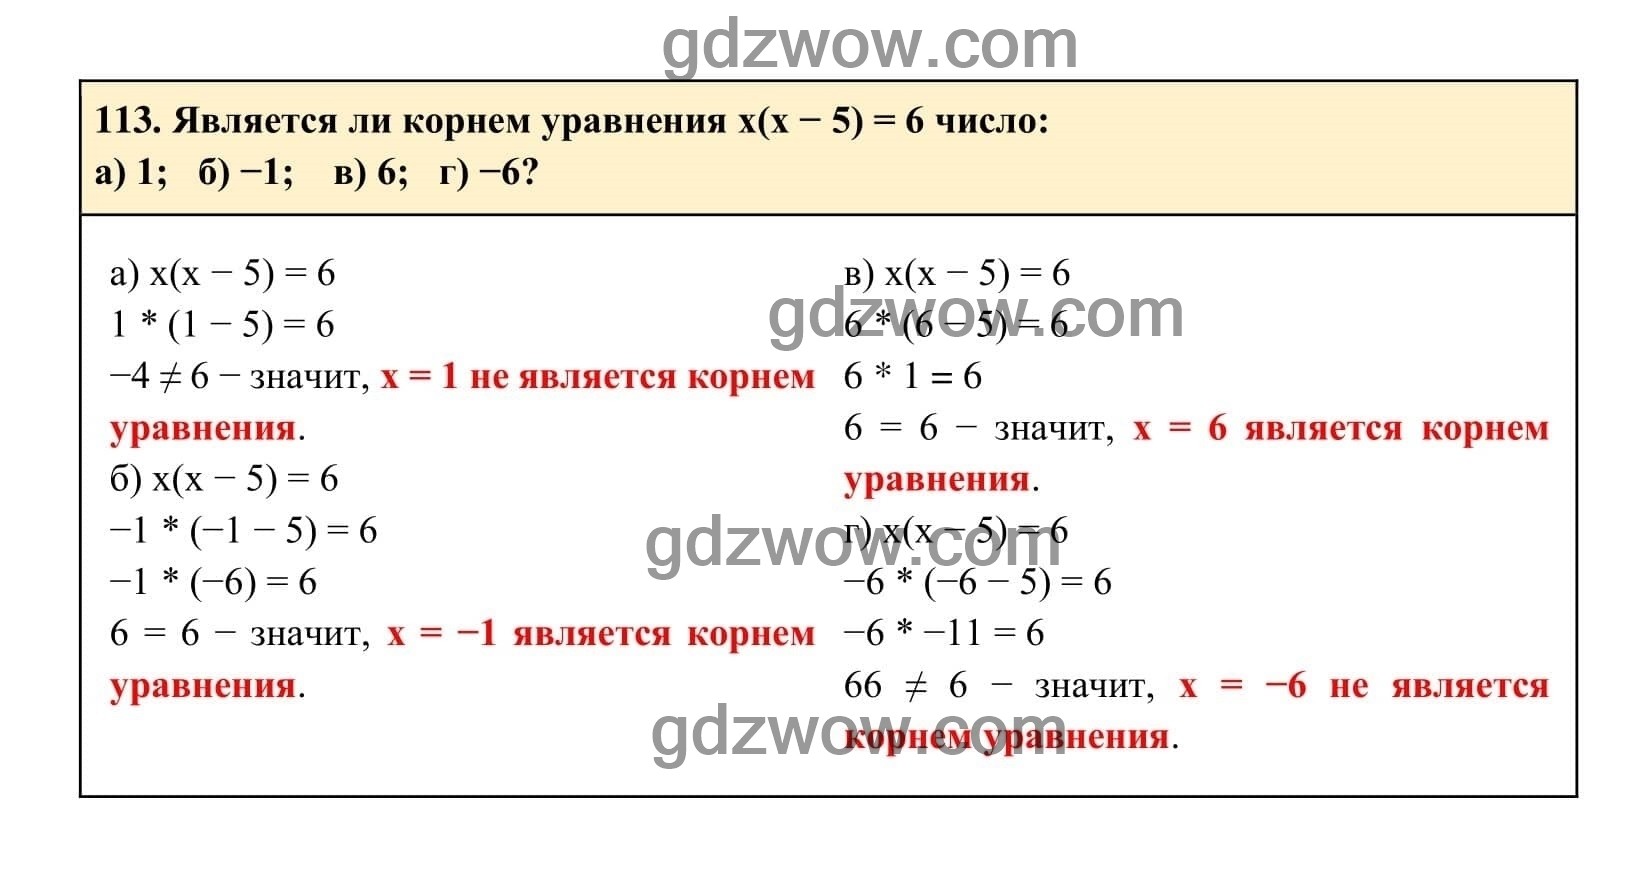 Упражнение 113 - ГДЗ по Алгебре 7 класс Учебник Макарычев (решебник) - GDZwow